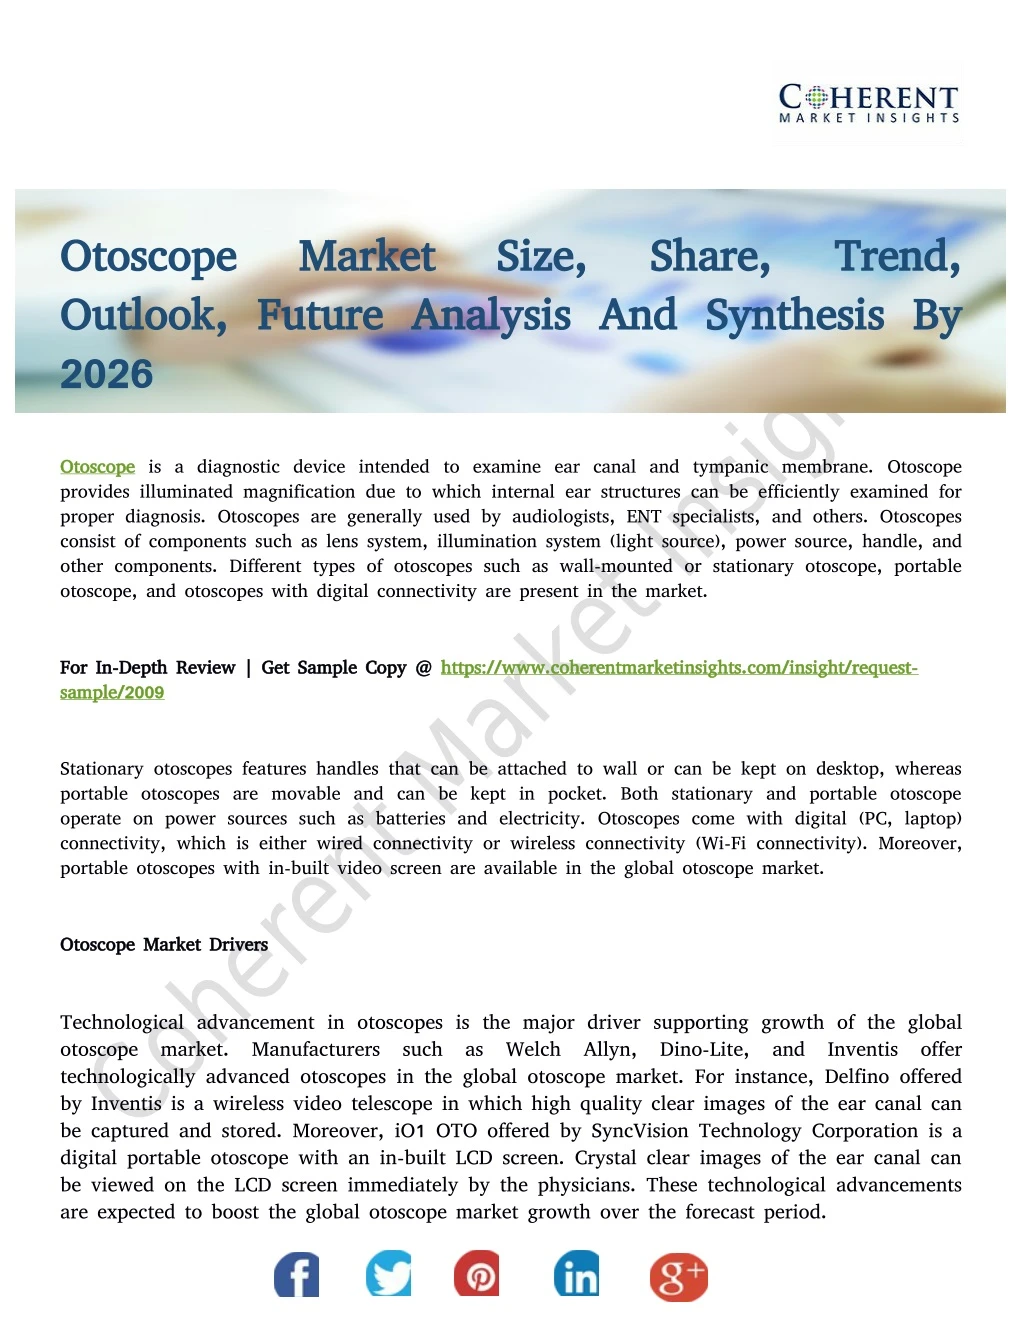 otoscope otoscope outlook future analysis